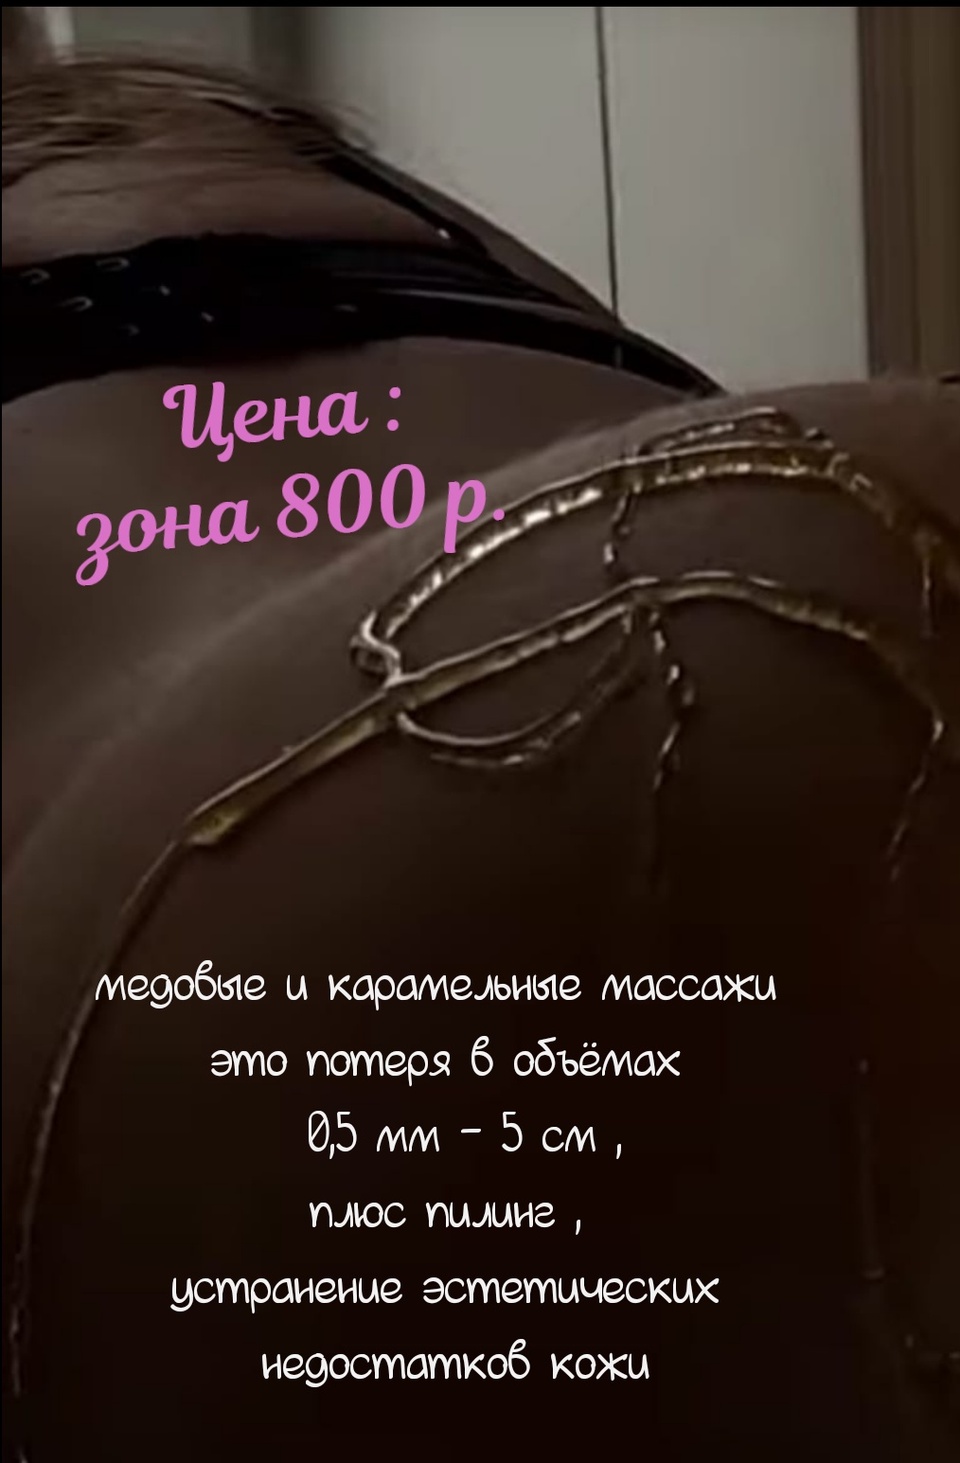 Медовый или карамельный массаж - 800 ₽, заказать онлайн.